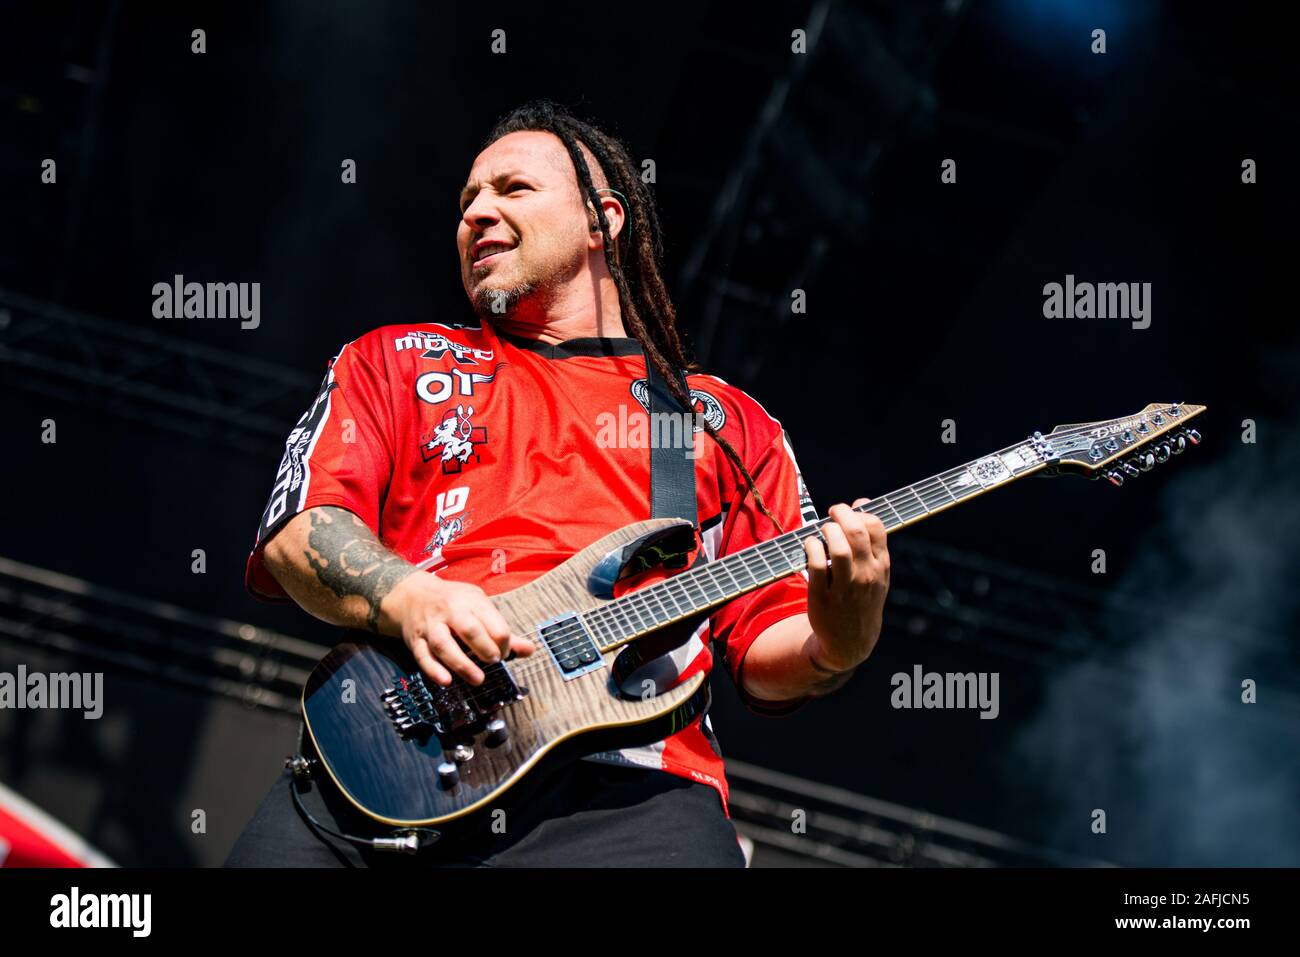 München, Deutschland - 31. Mai: Zoltan Bathory, Gitarrist der Amerikanischen metal band Five Finger Death Punch (5 FDP) live am Rockavaria Festival am 31. Mai 2015 in München, Deutschland. Stockfoto